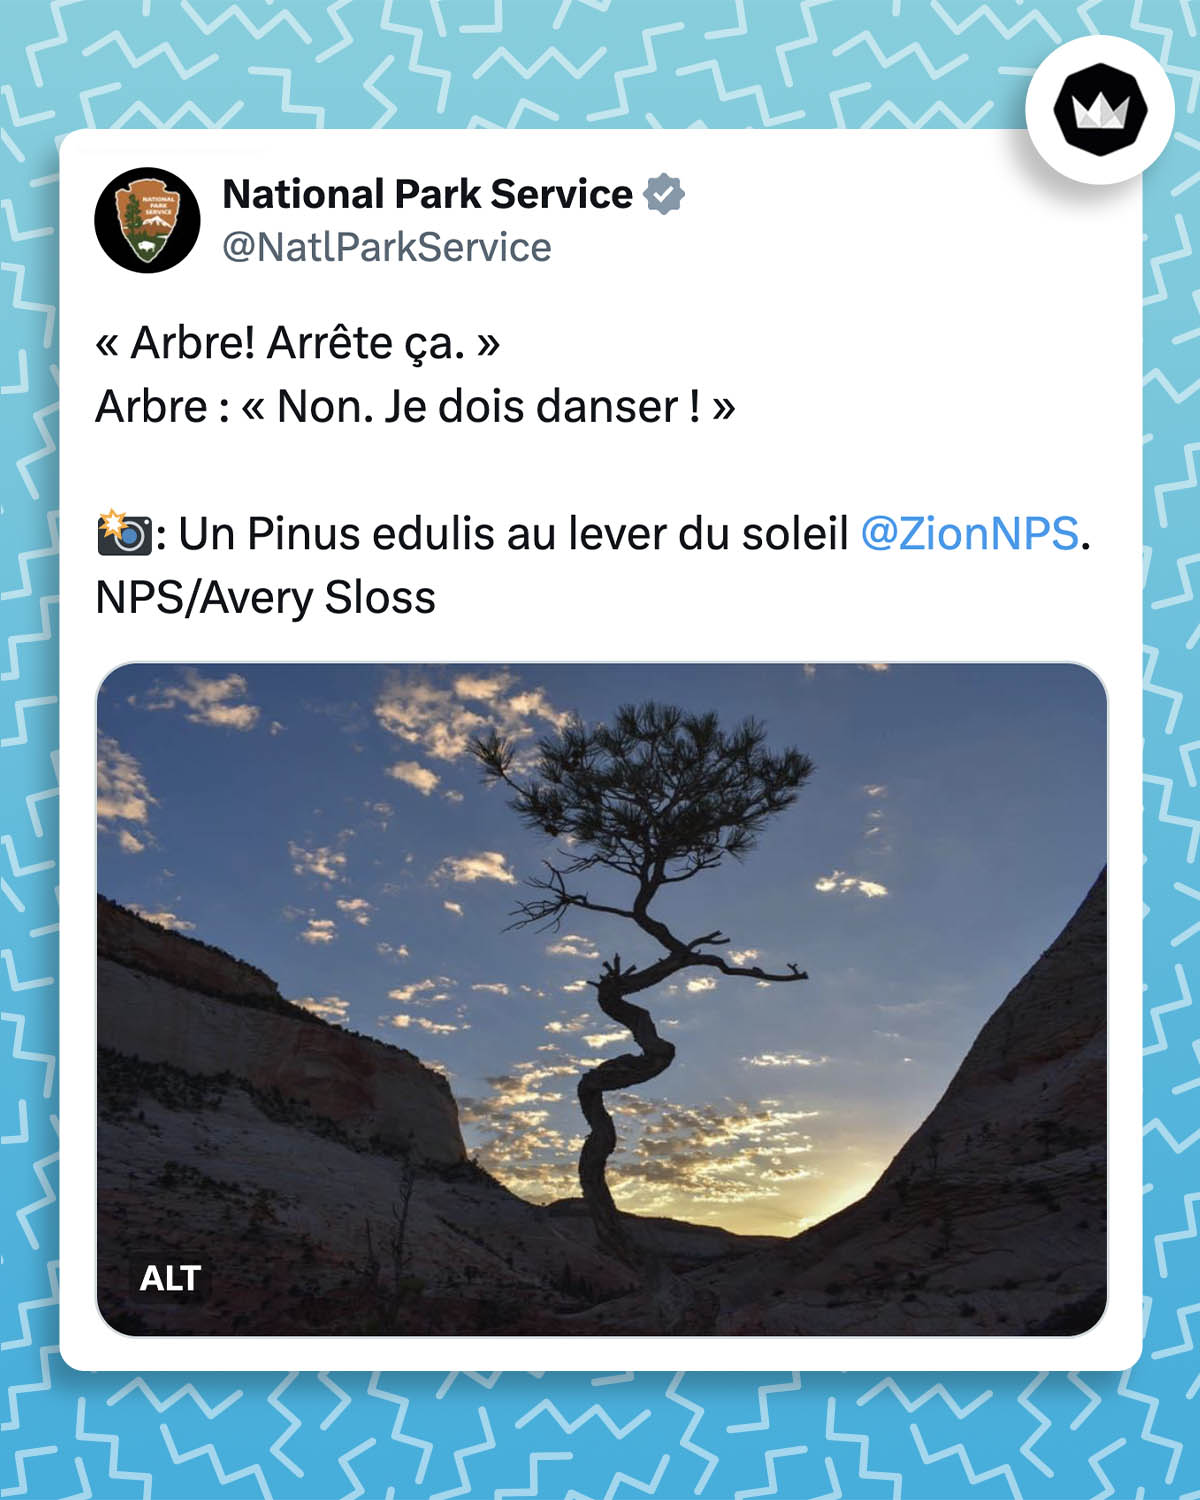 « Arbre! Arrête ça. »
Arbre : « Non. Je dois danser ! »
 : Un Pinus edulis au lever du soleil @ZionNPS. NPS/Avery perte
Accompagné de la photo d'un Pinus edulis dont le tronc fait des zigzags. 